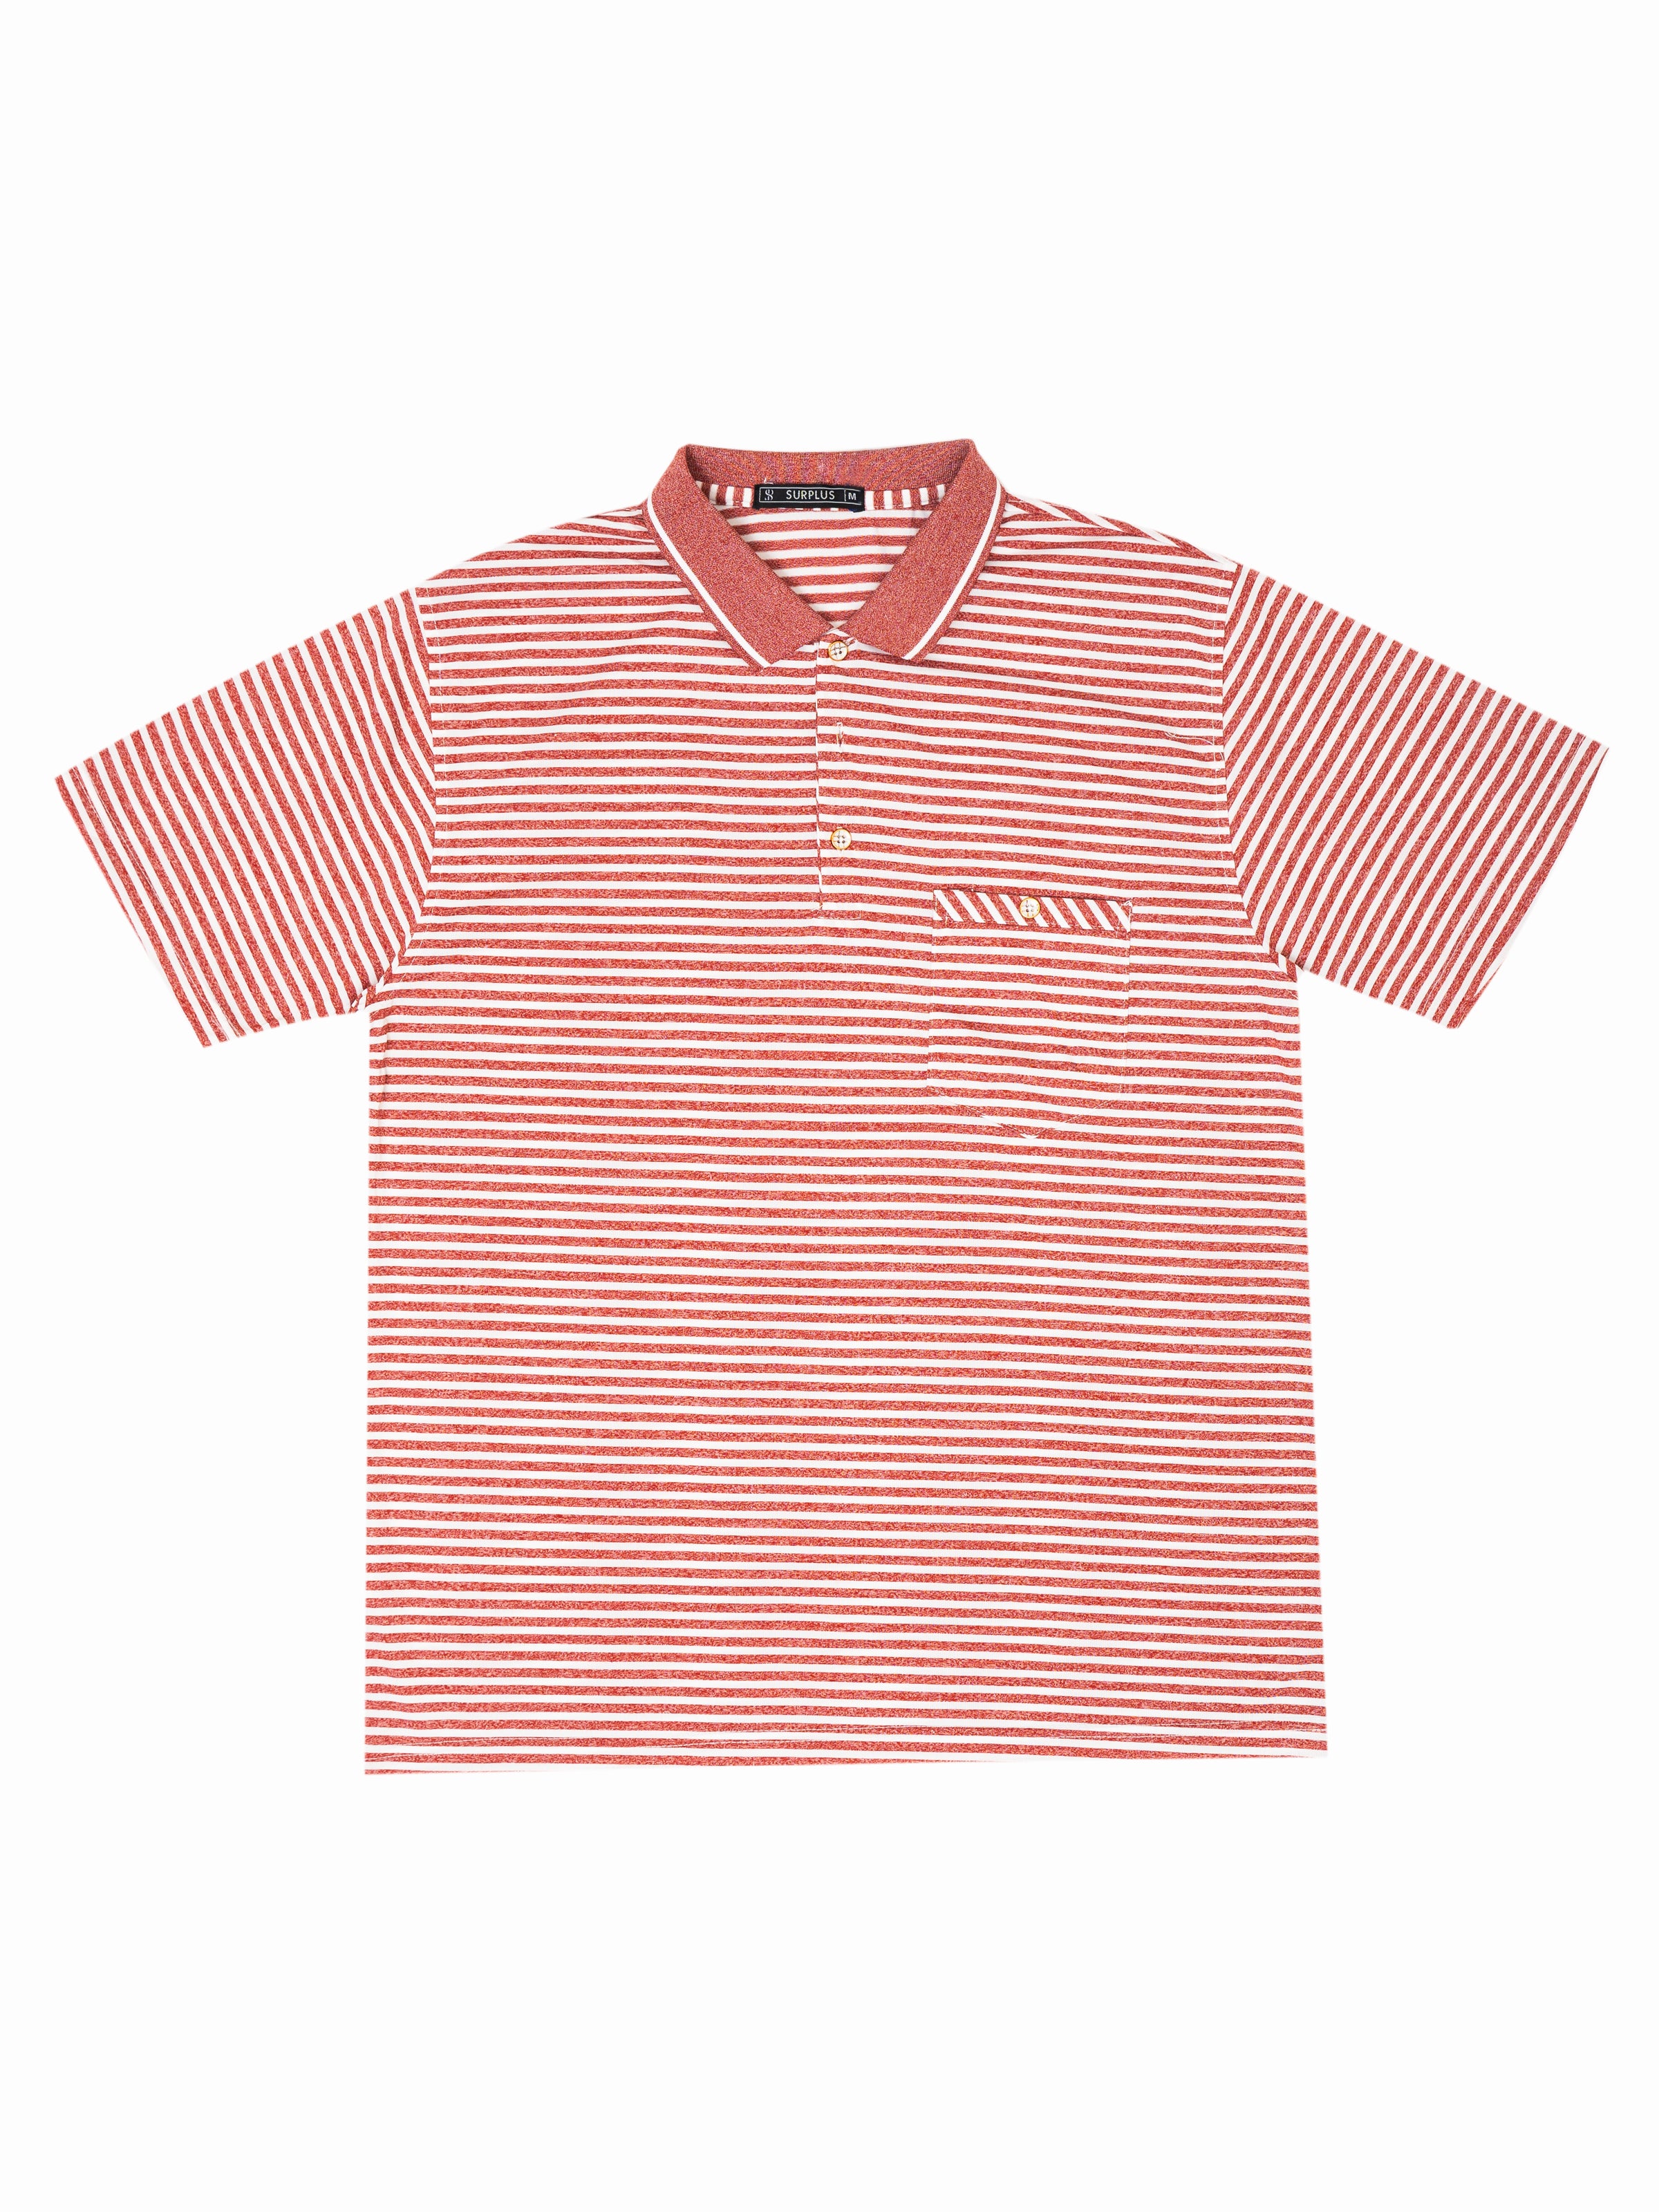 T-Shirt Polo